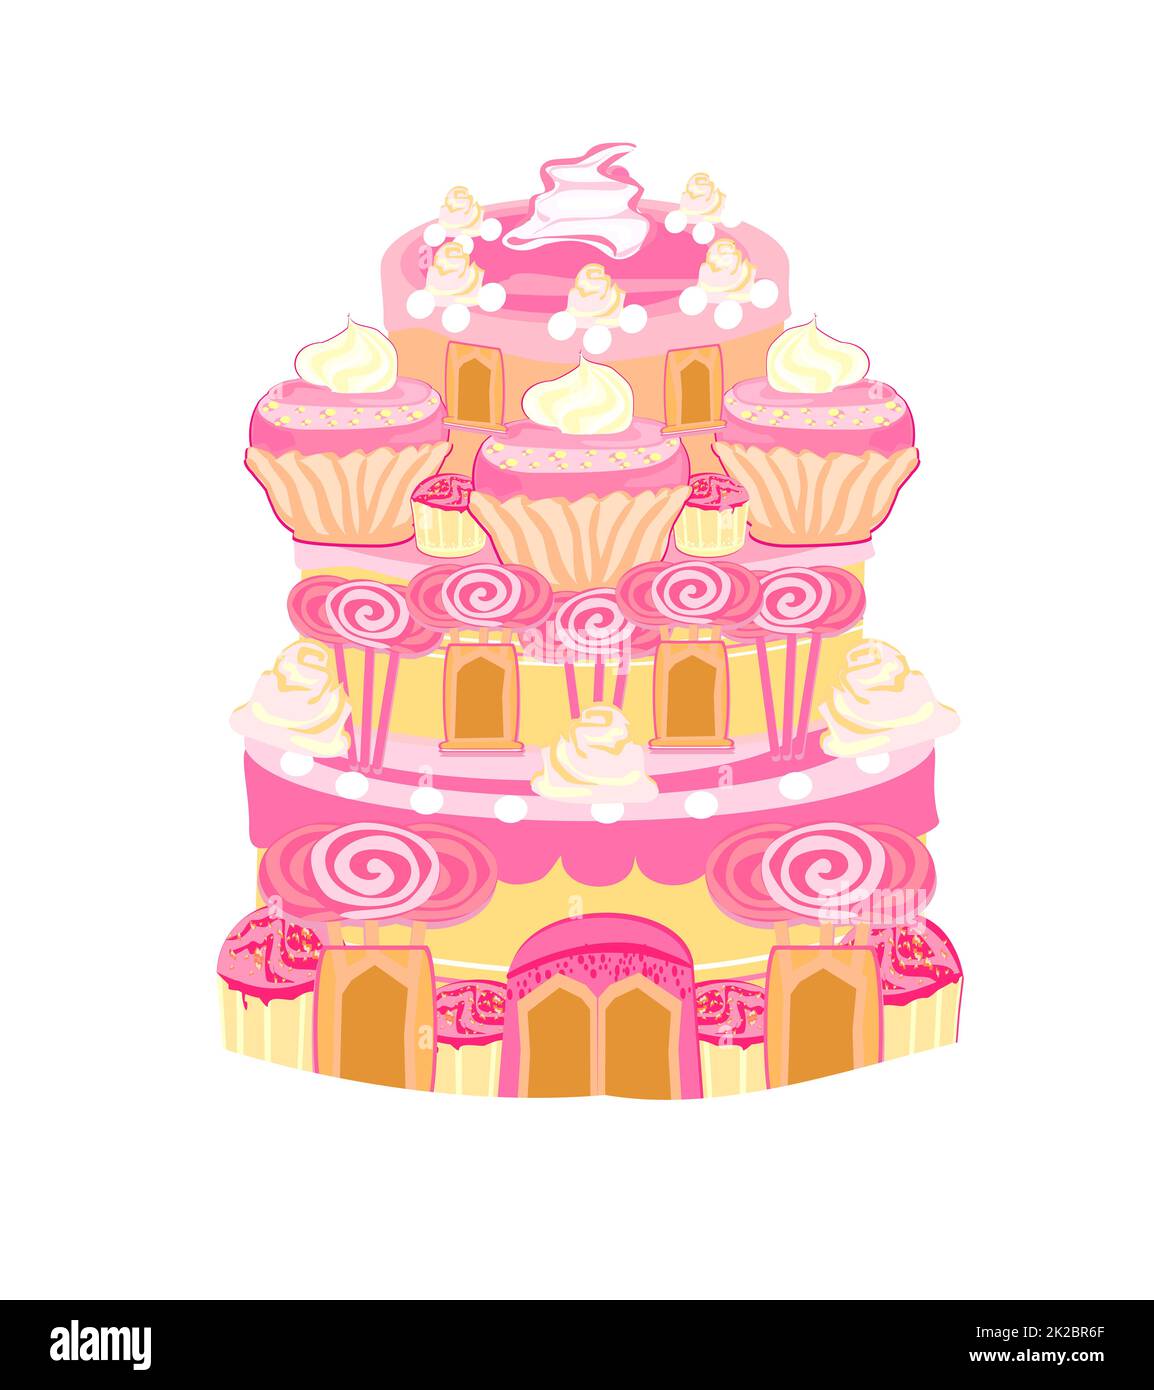 Art de château à gâteau multicolore - illustration de conte de fées isolée Banque D'Images